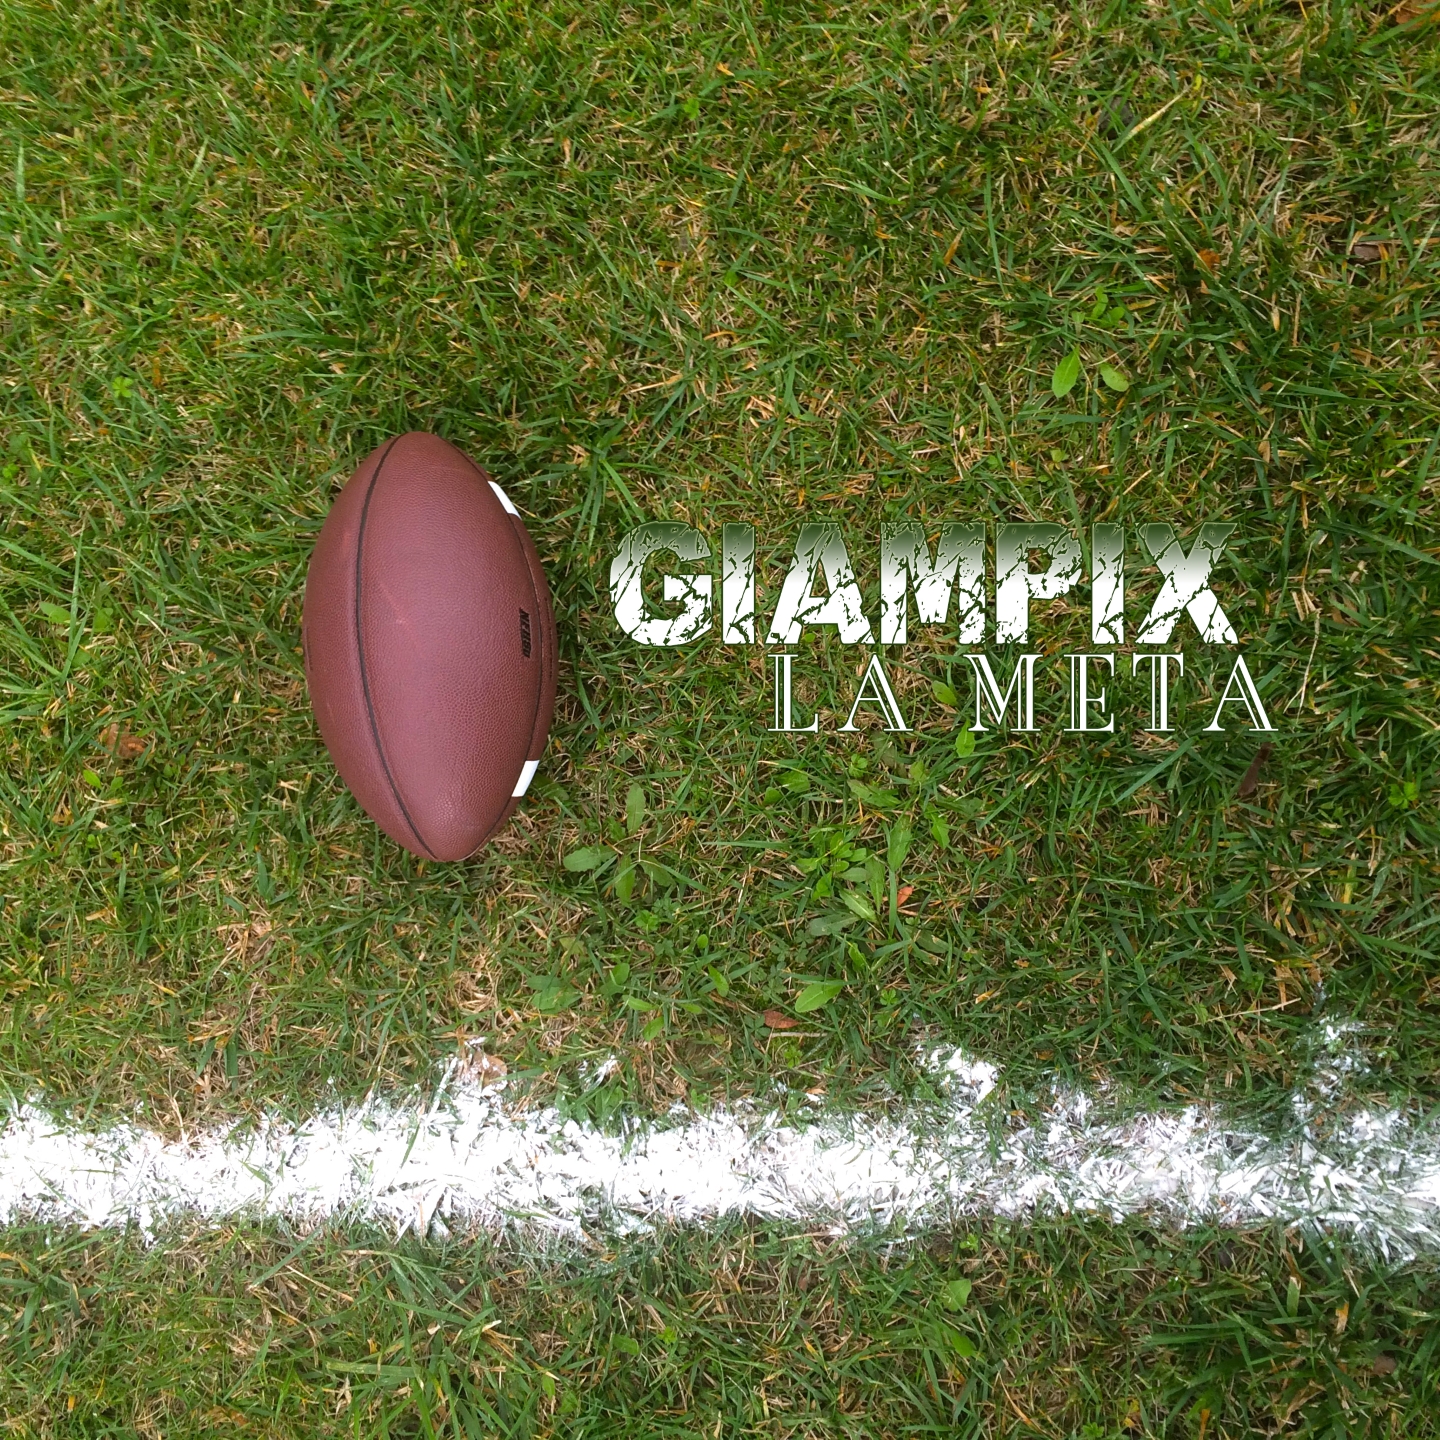 Foto 1 - In radio arriva Giampix: l’artista senese presenta il suo nuovo album “La Meta”.